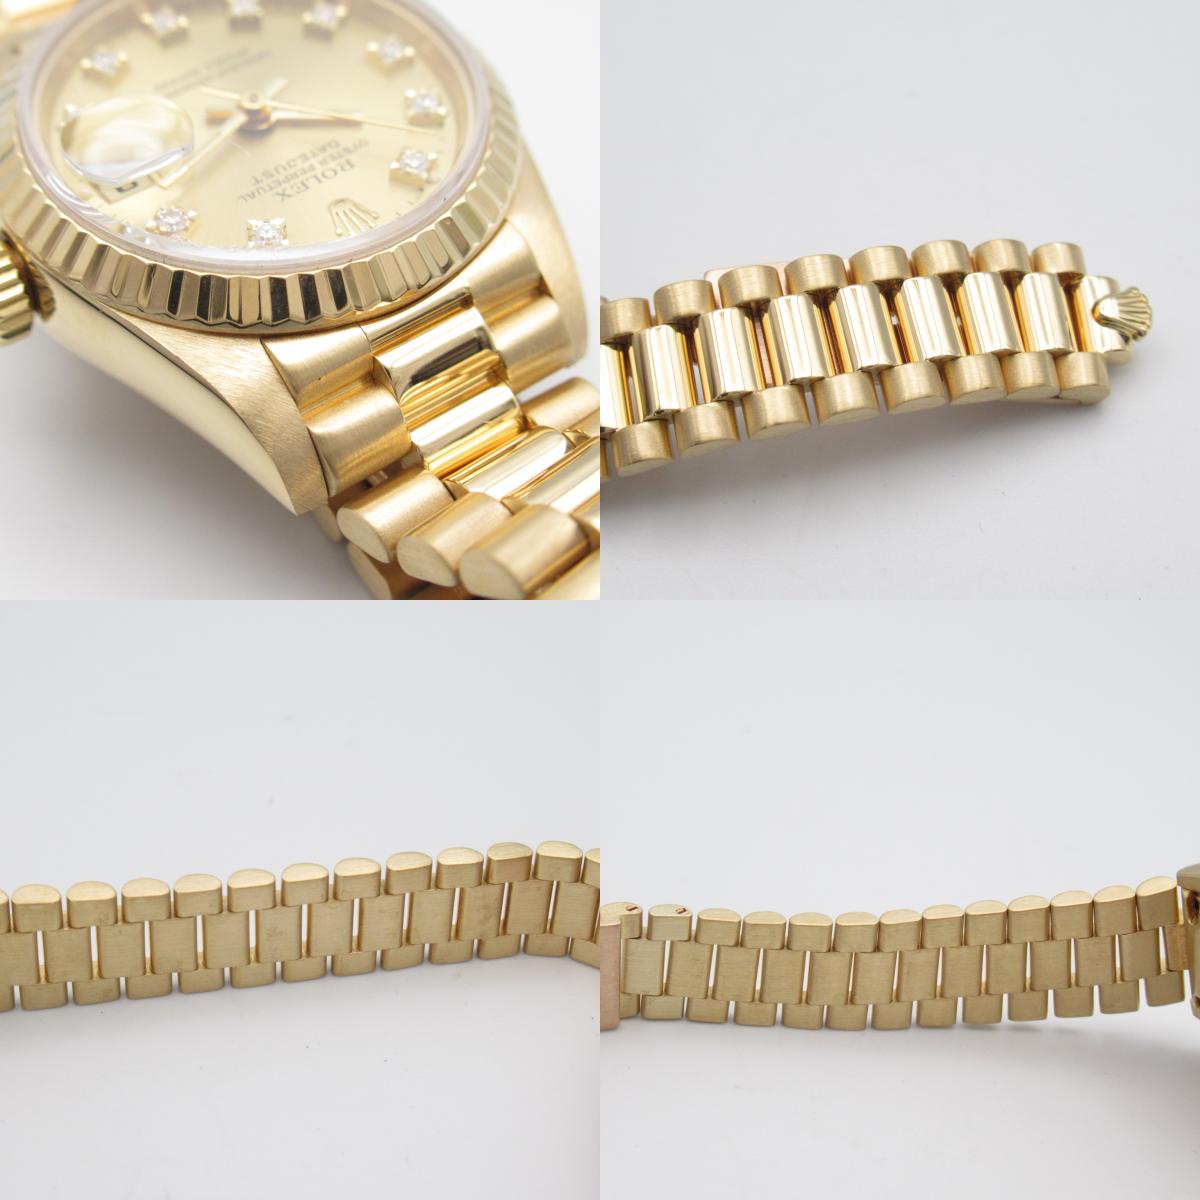 Rolex Rolex 10P Diamond S  Watch K18 (Yellow G)  Gold CH/QP 69178G